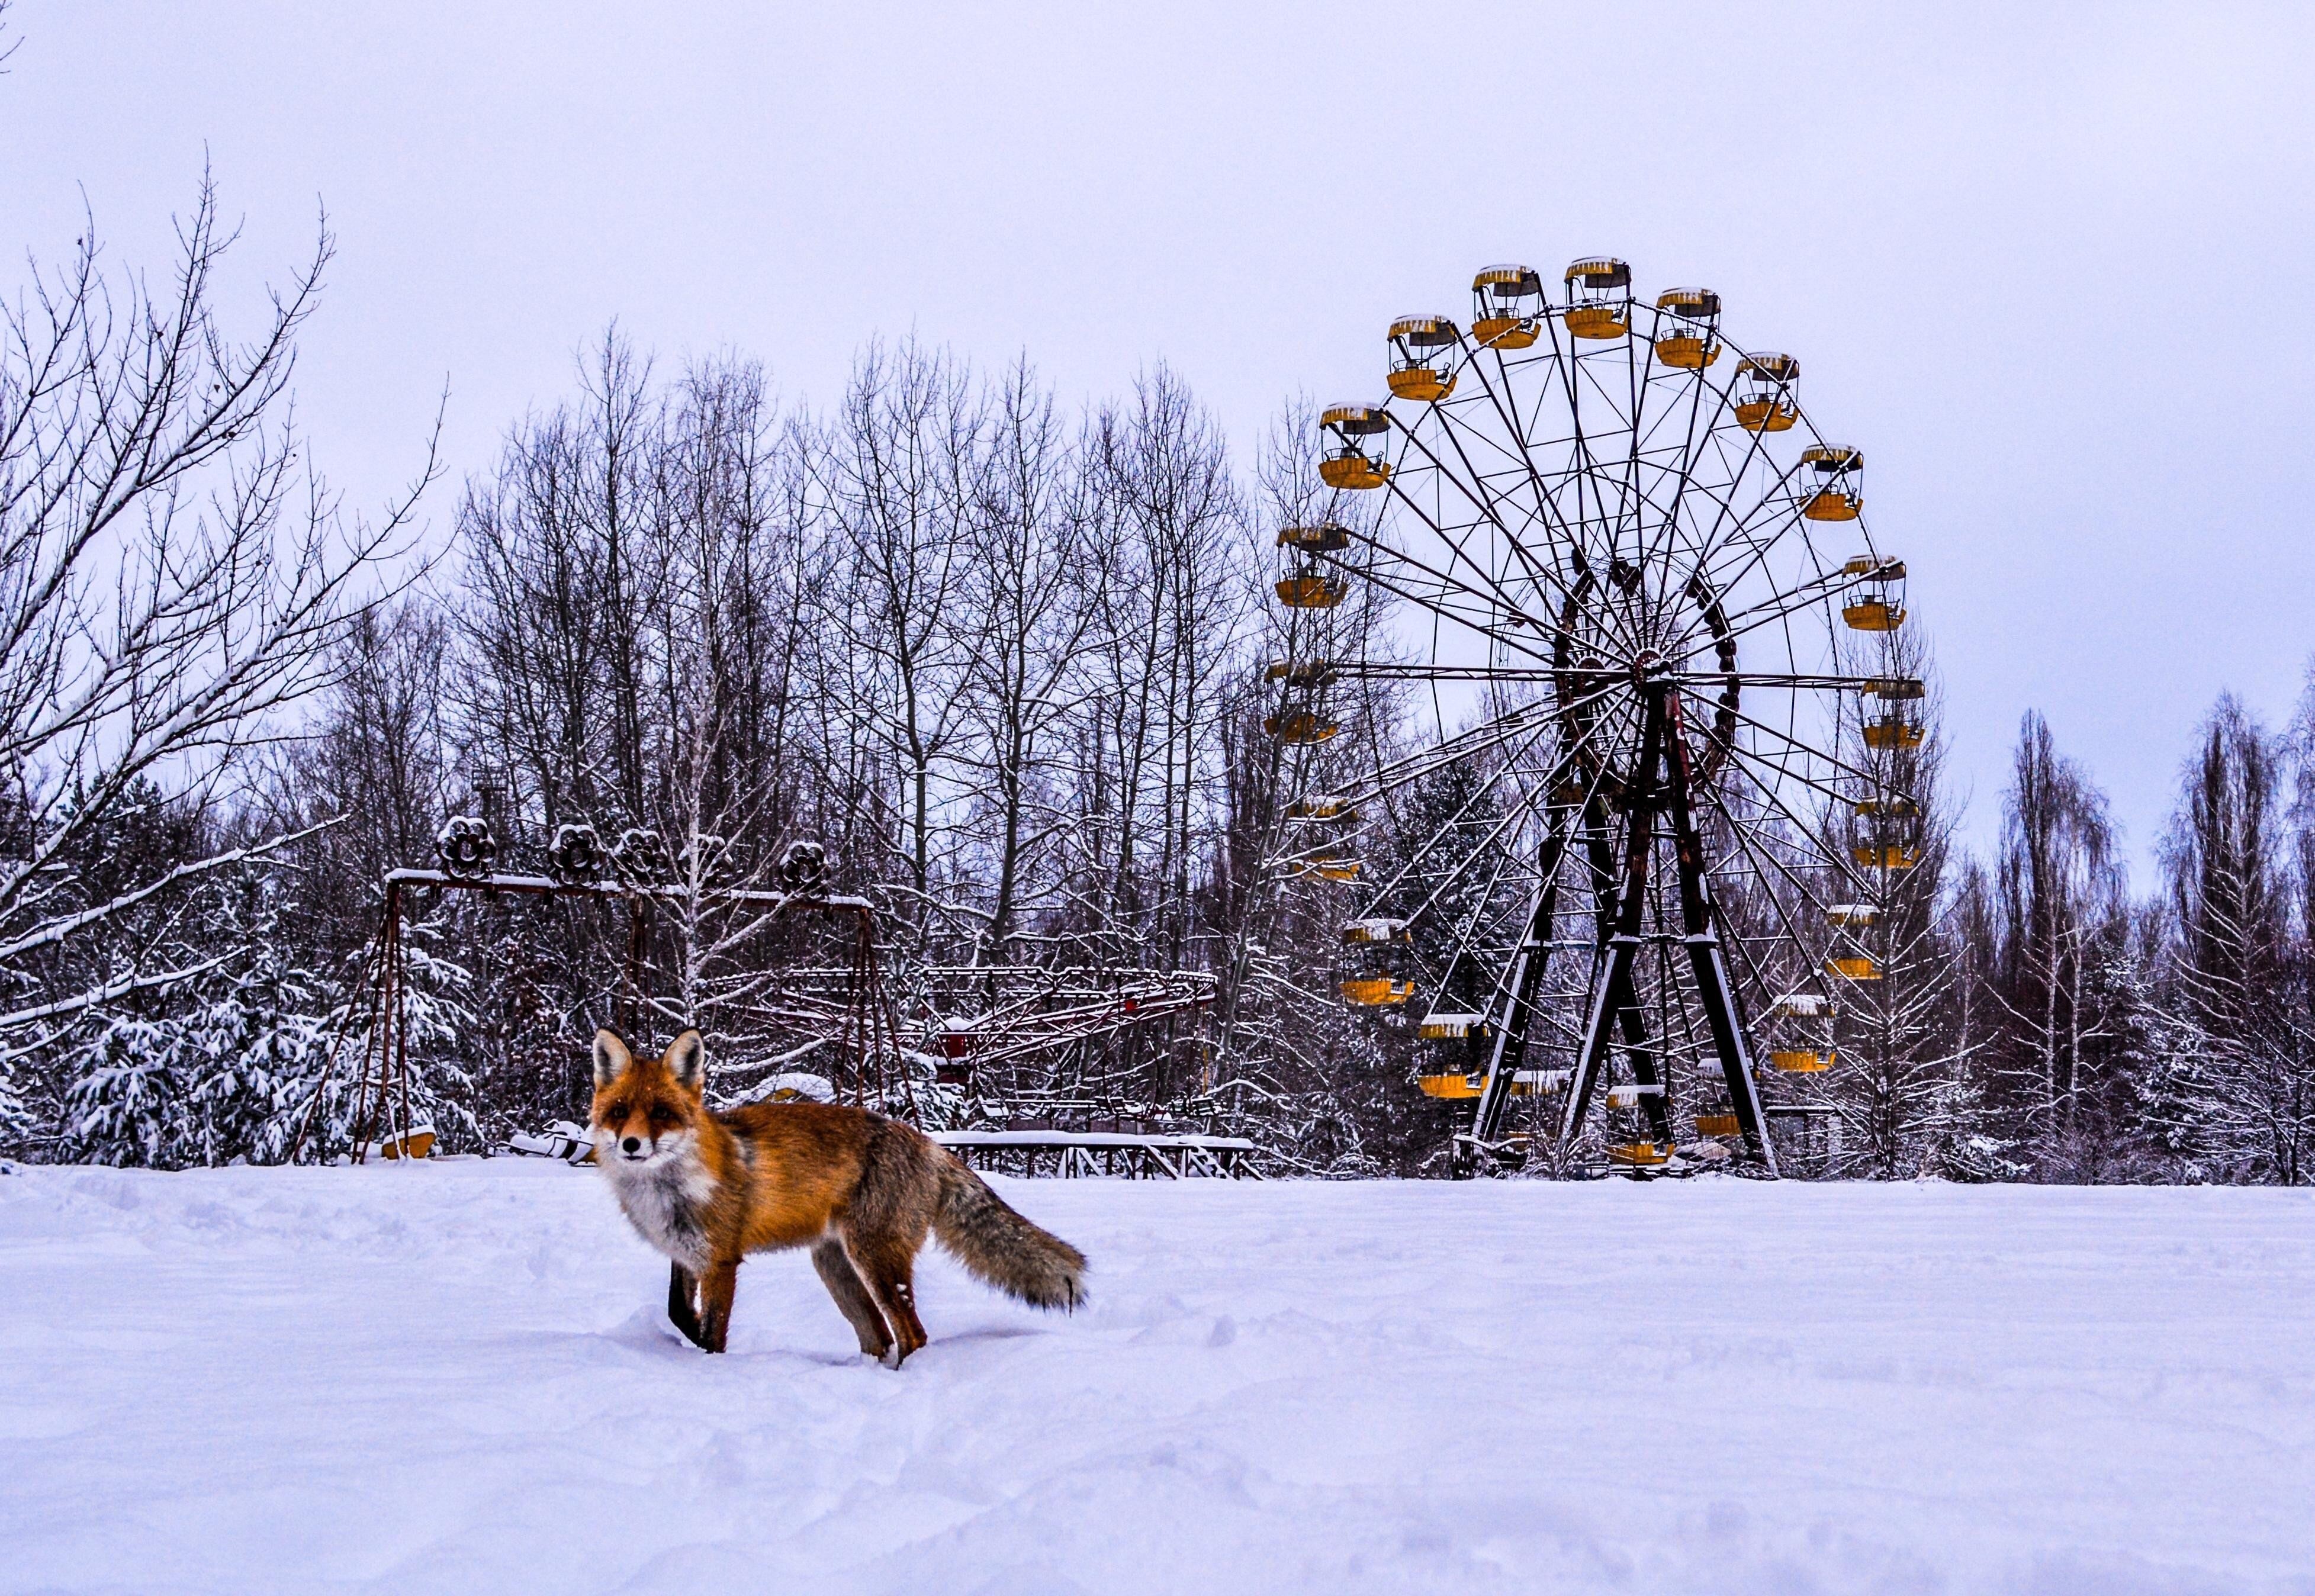 Chernobyl: Bencana Umat Manusia, Rahmat untuk Alam